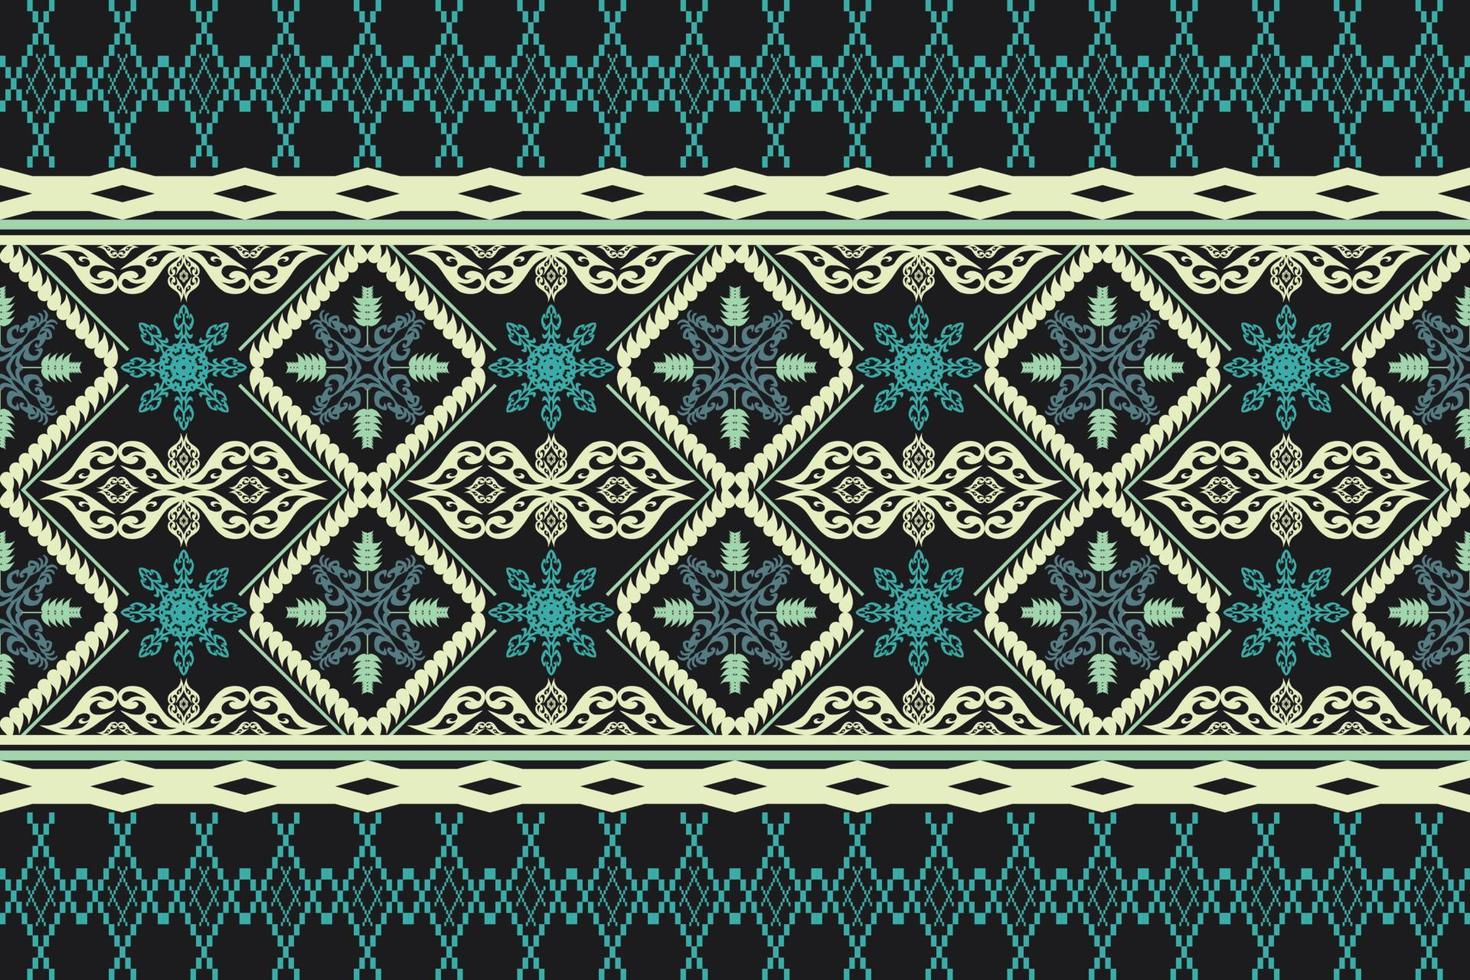 geometrico etnico orientale tradizionale pattern.figure ricamo tribale style.design per sfondo, carta da parati, abbigliamento, confezionamento, tessuto, illustrazione vettoriale